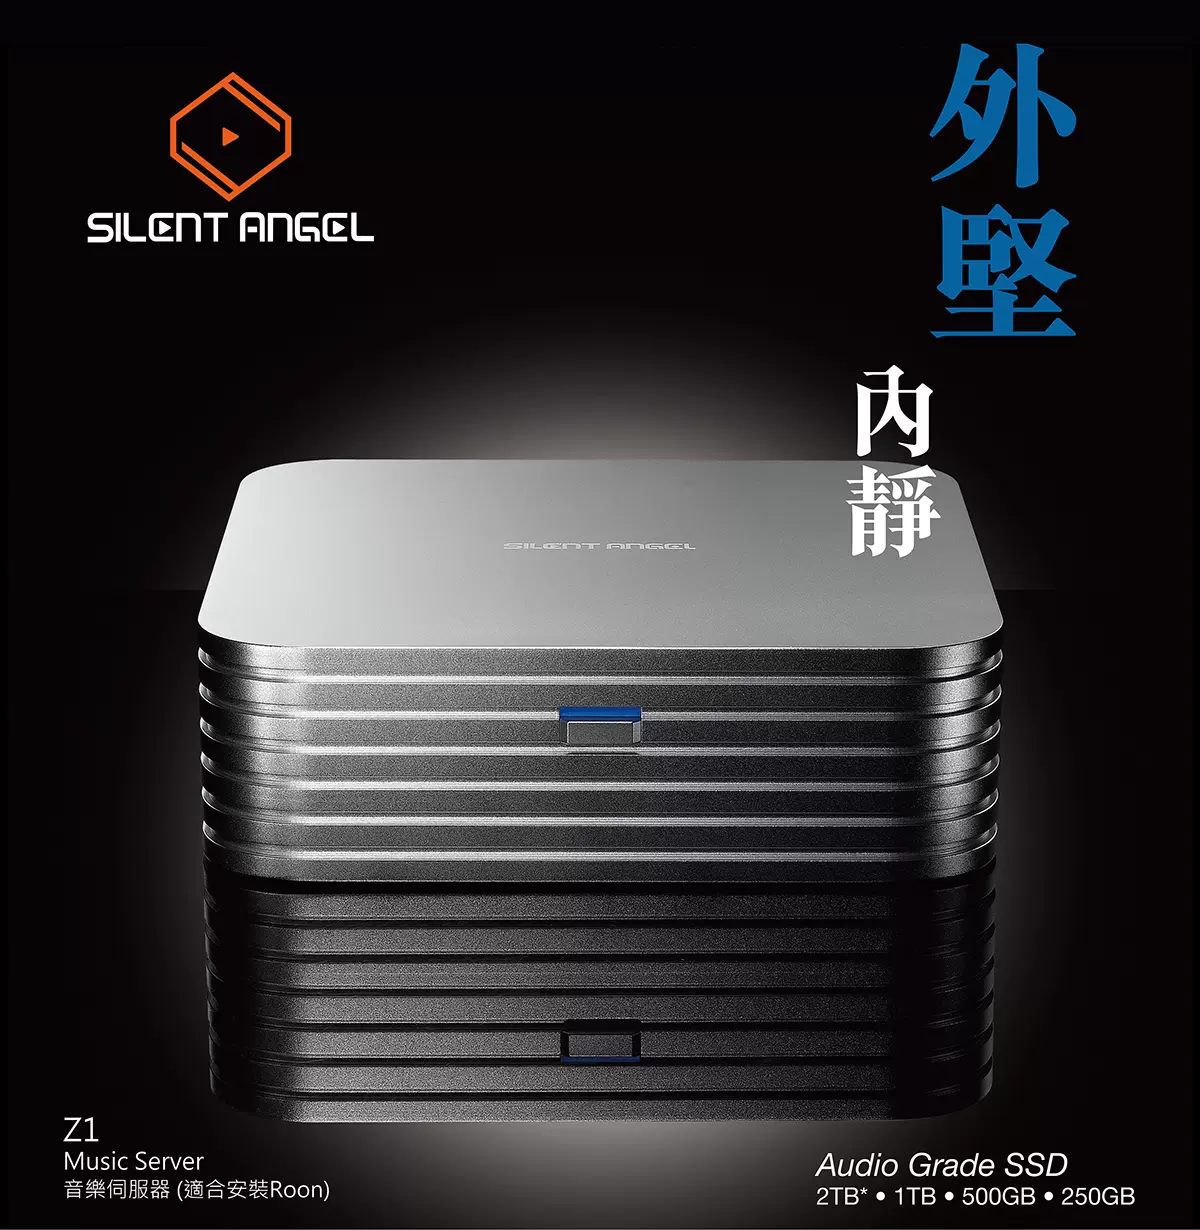 仙籟Silent Angel Rhein Z1 Music Serve音樂串流伺服器Roon Core-Taobao